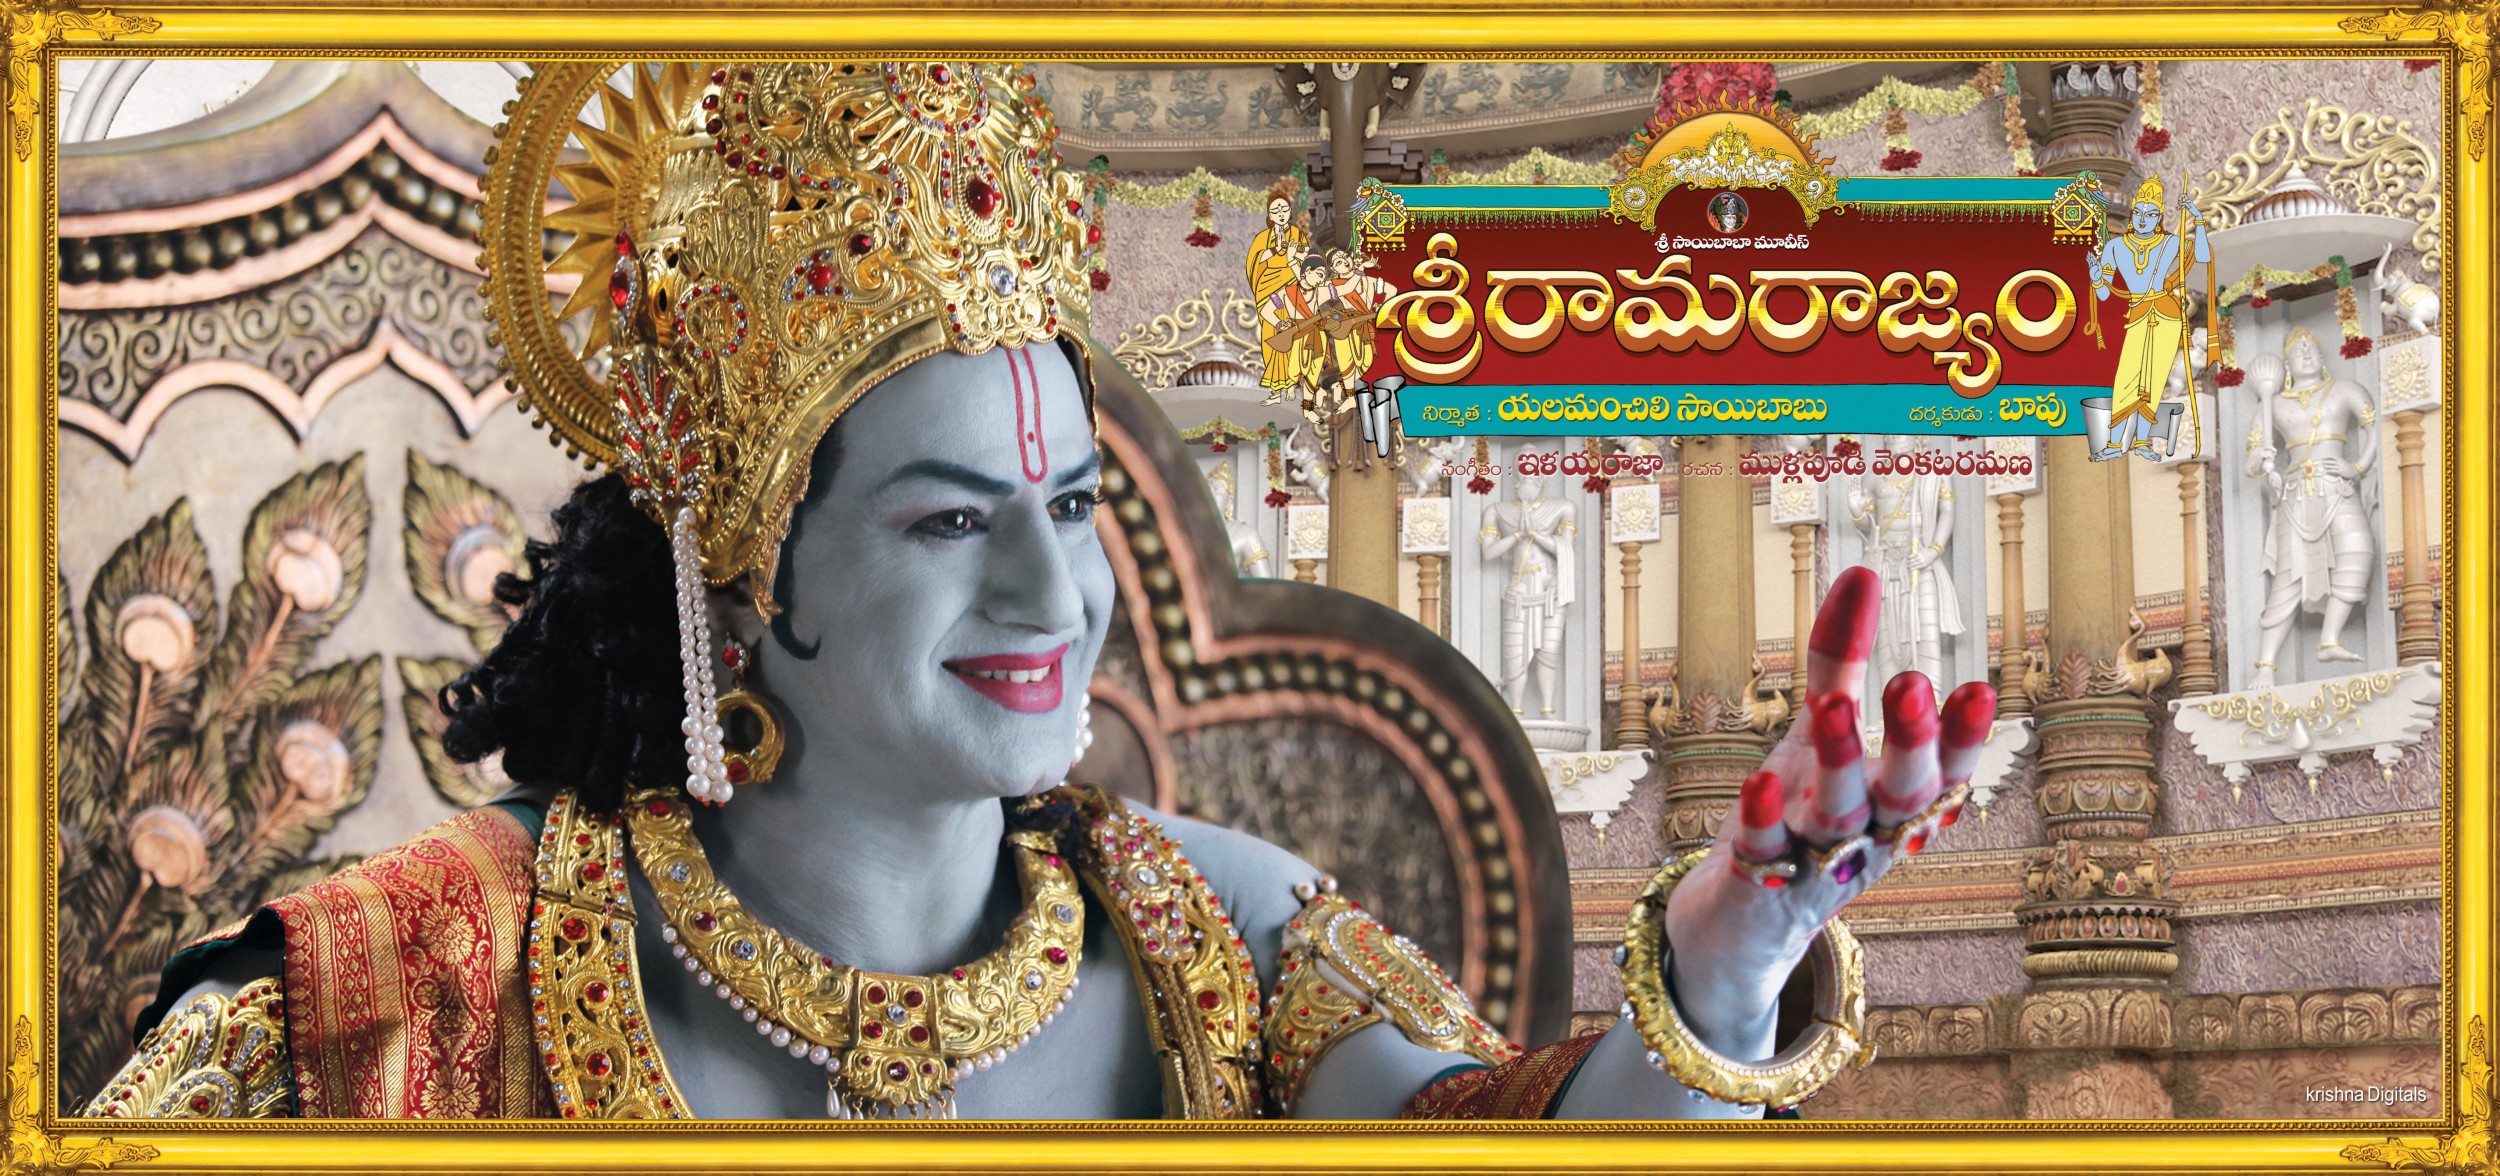 Mega Sized Movie Poster Image for Sri Rama Rajyam (#3 of 10)